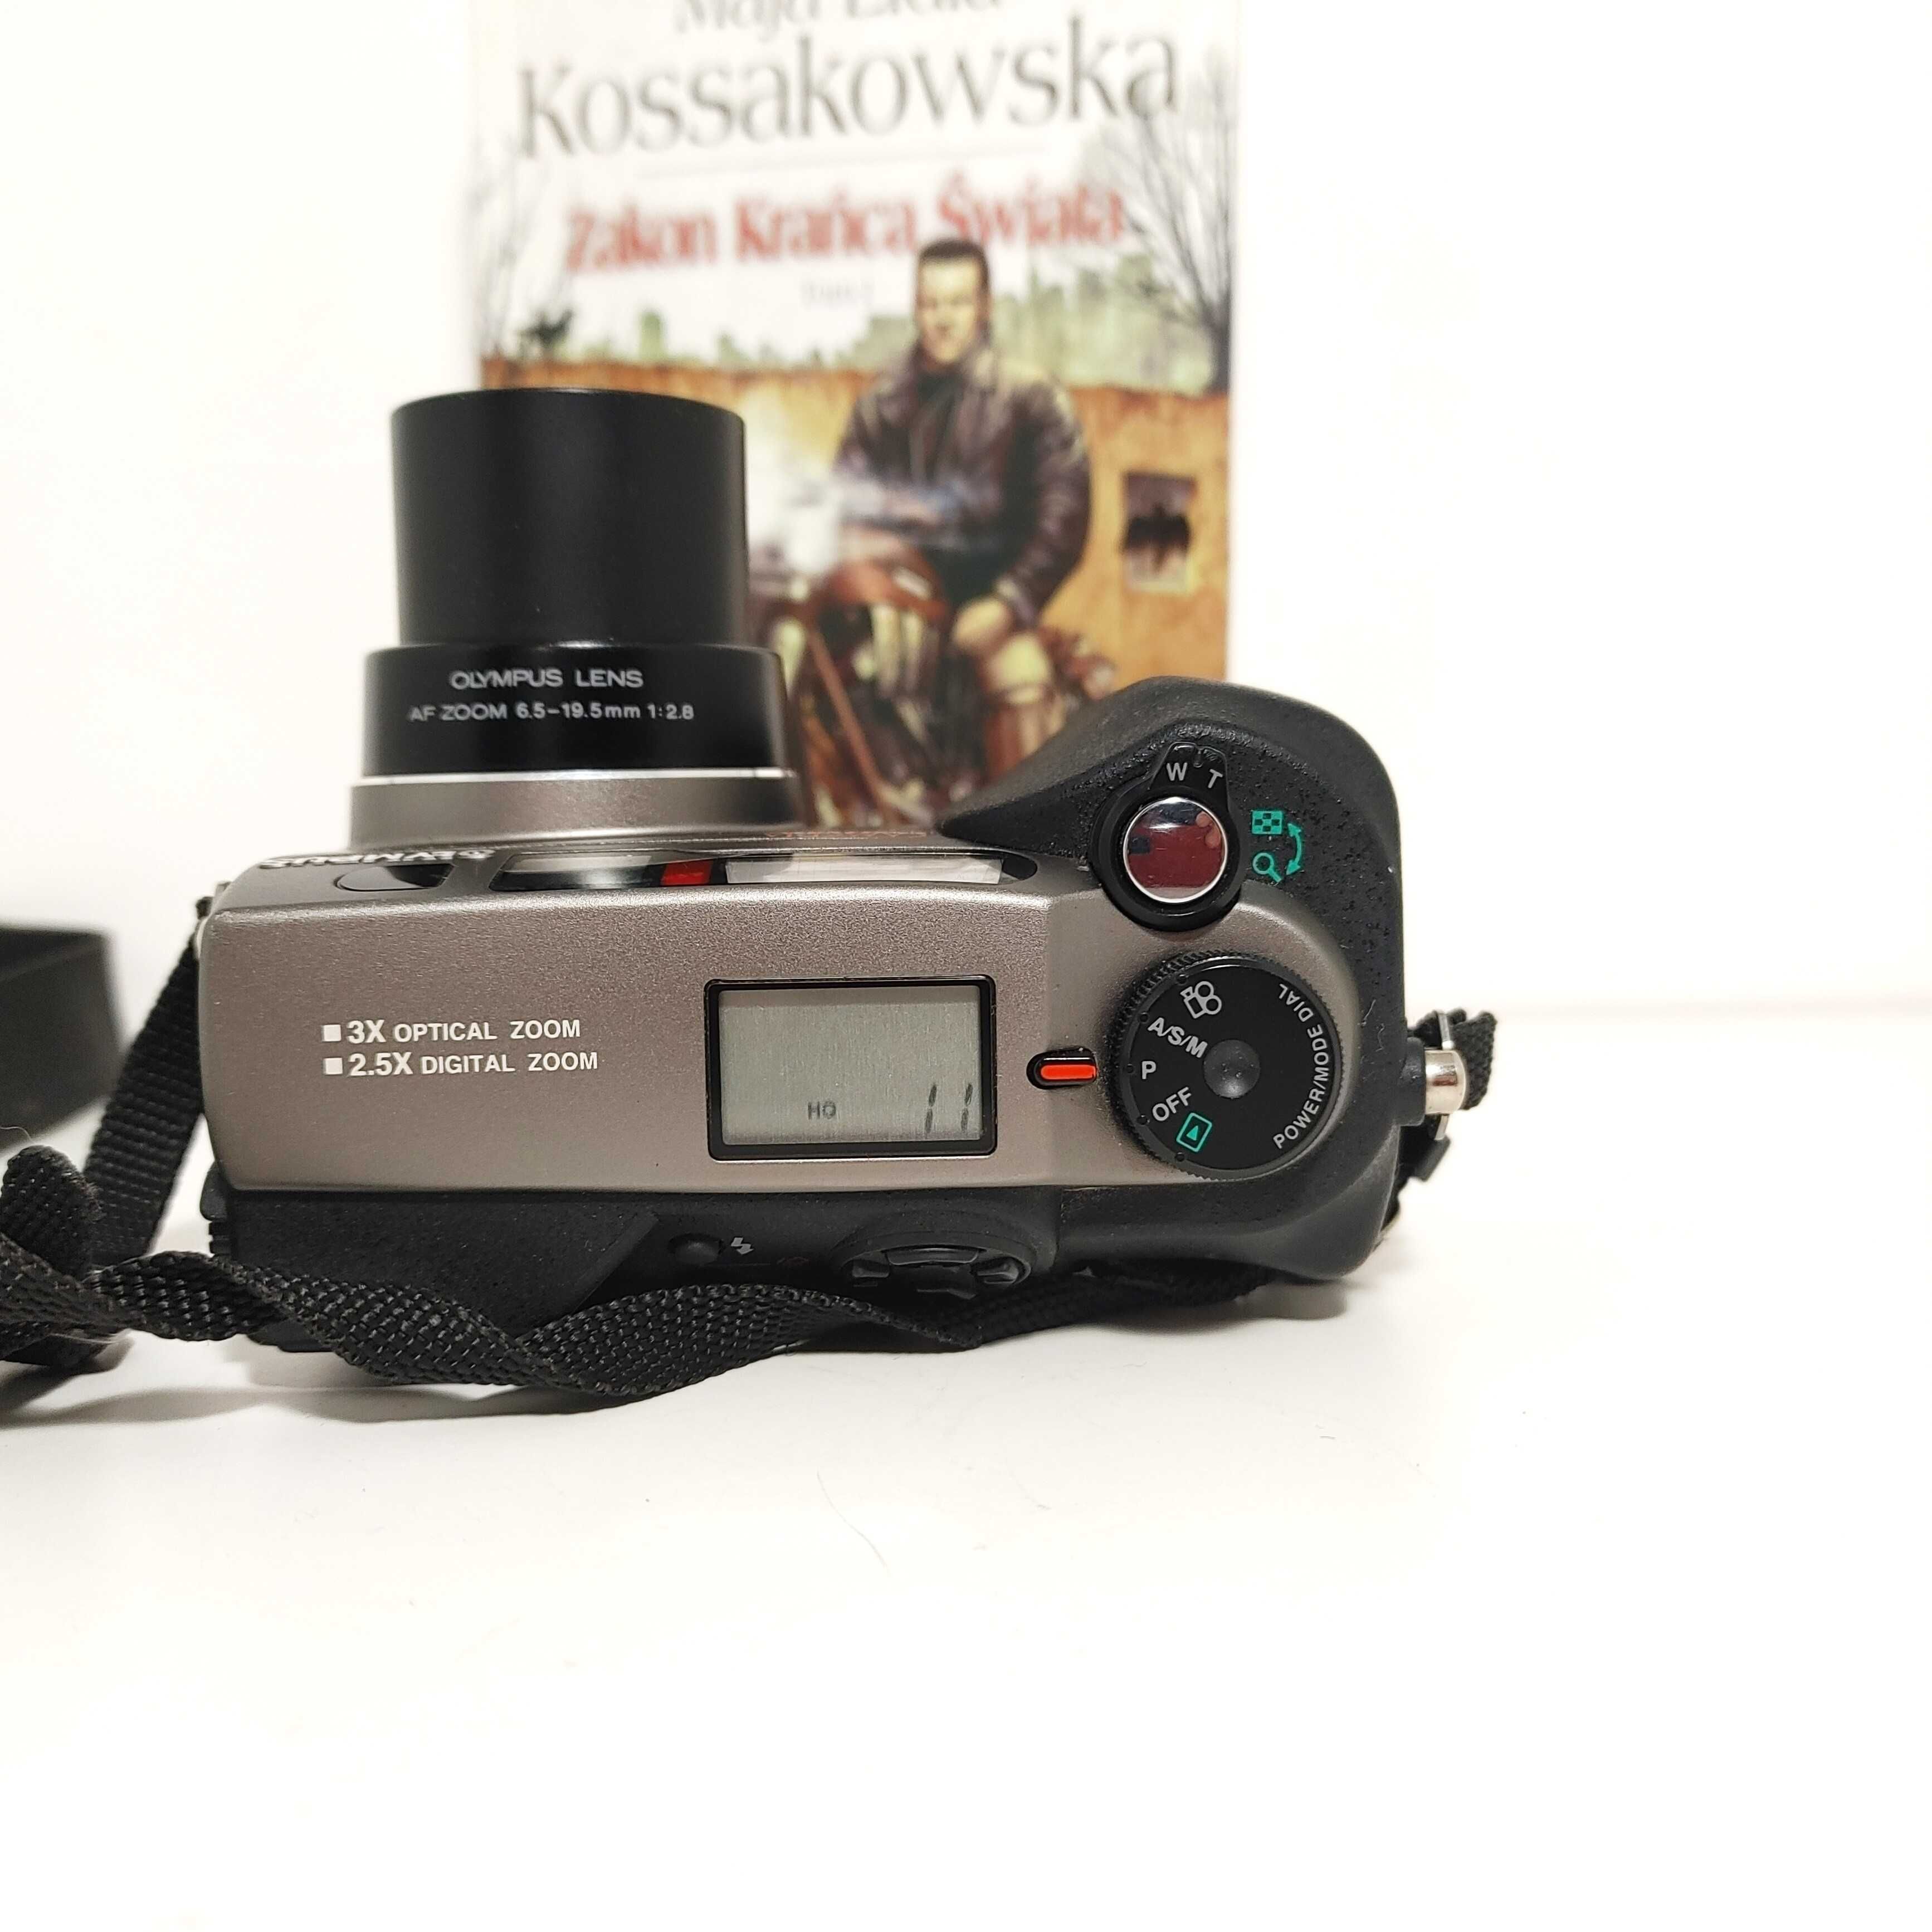 Prawdziwe RETRO Olympus C3000 ZOOM fotograficzny aparat cyfrowy 3,3 MP